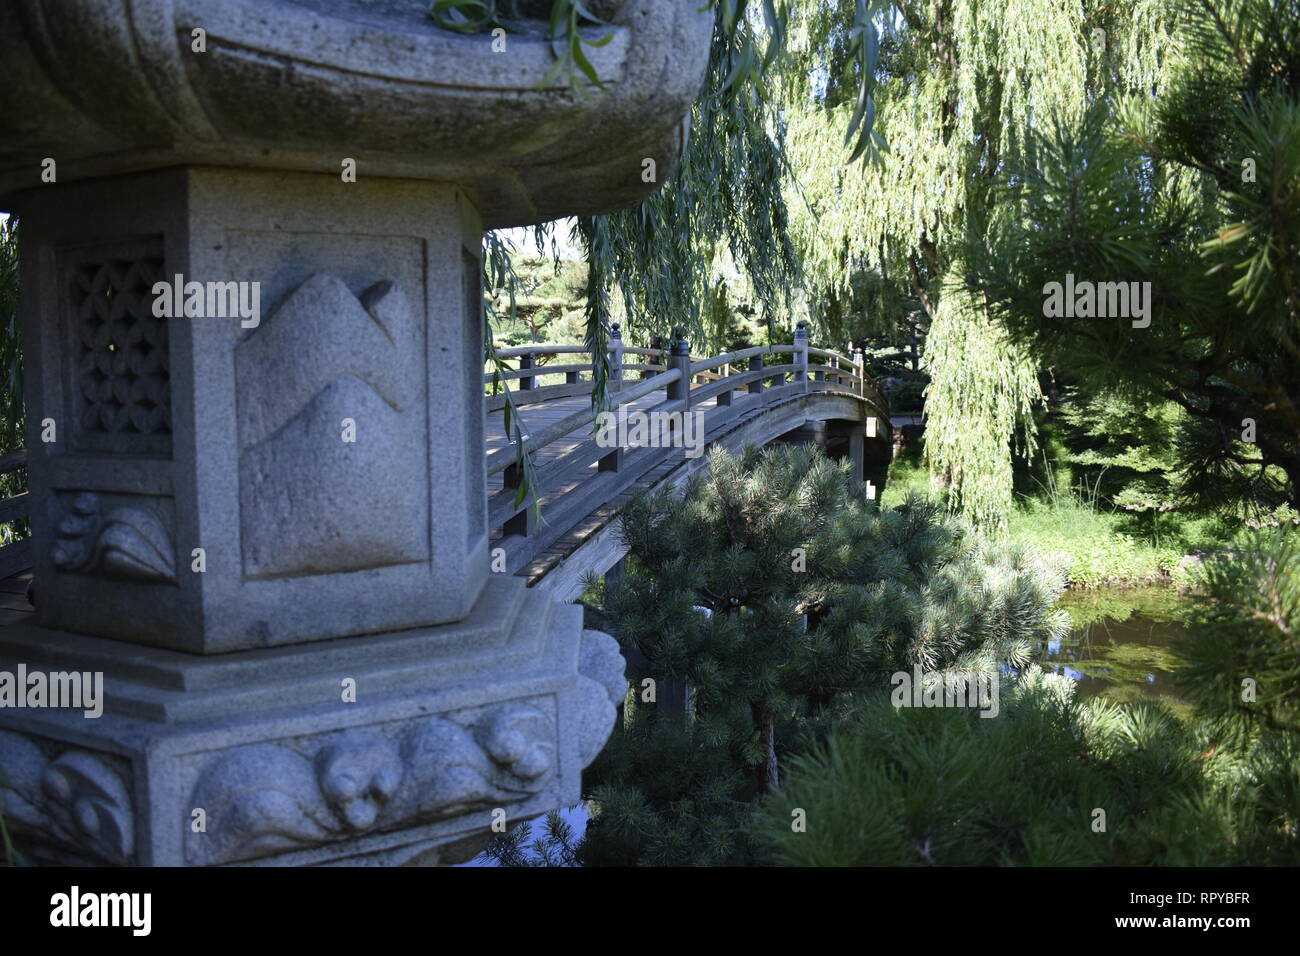 Japanische Laterne und Bridge Chicago Botanical Gardens Stockfoto